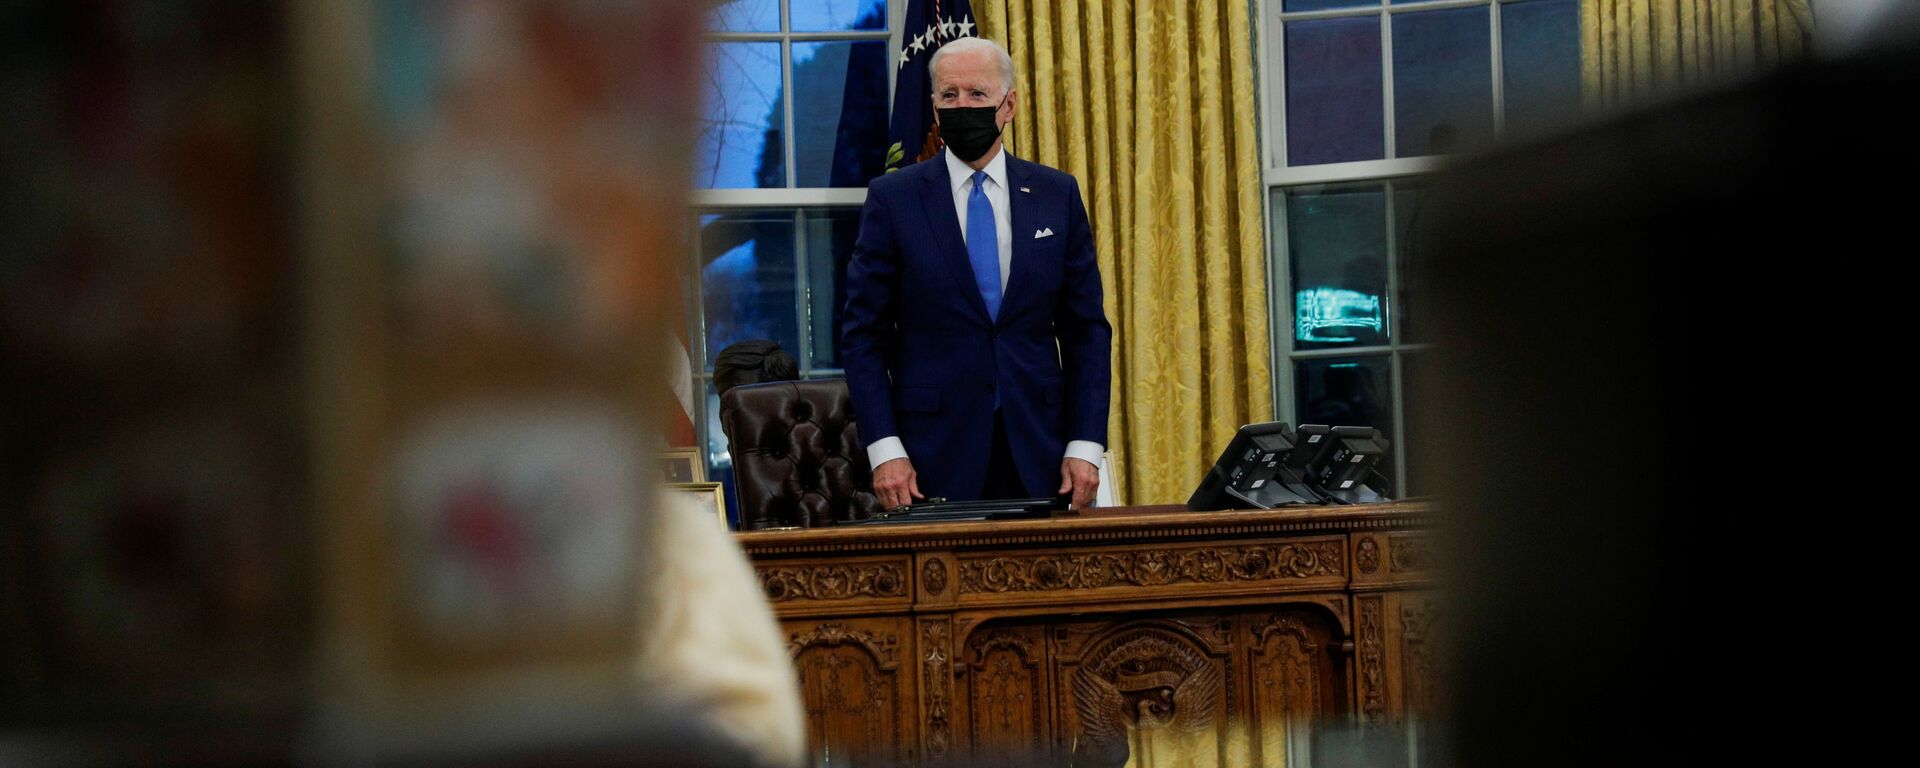 Joe Biden, presidente de EEUU, en el Despacho Oval de la Casa Blanca - Sputnik Mundo, 1920, 21.03.2021